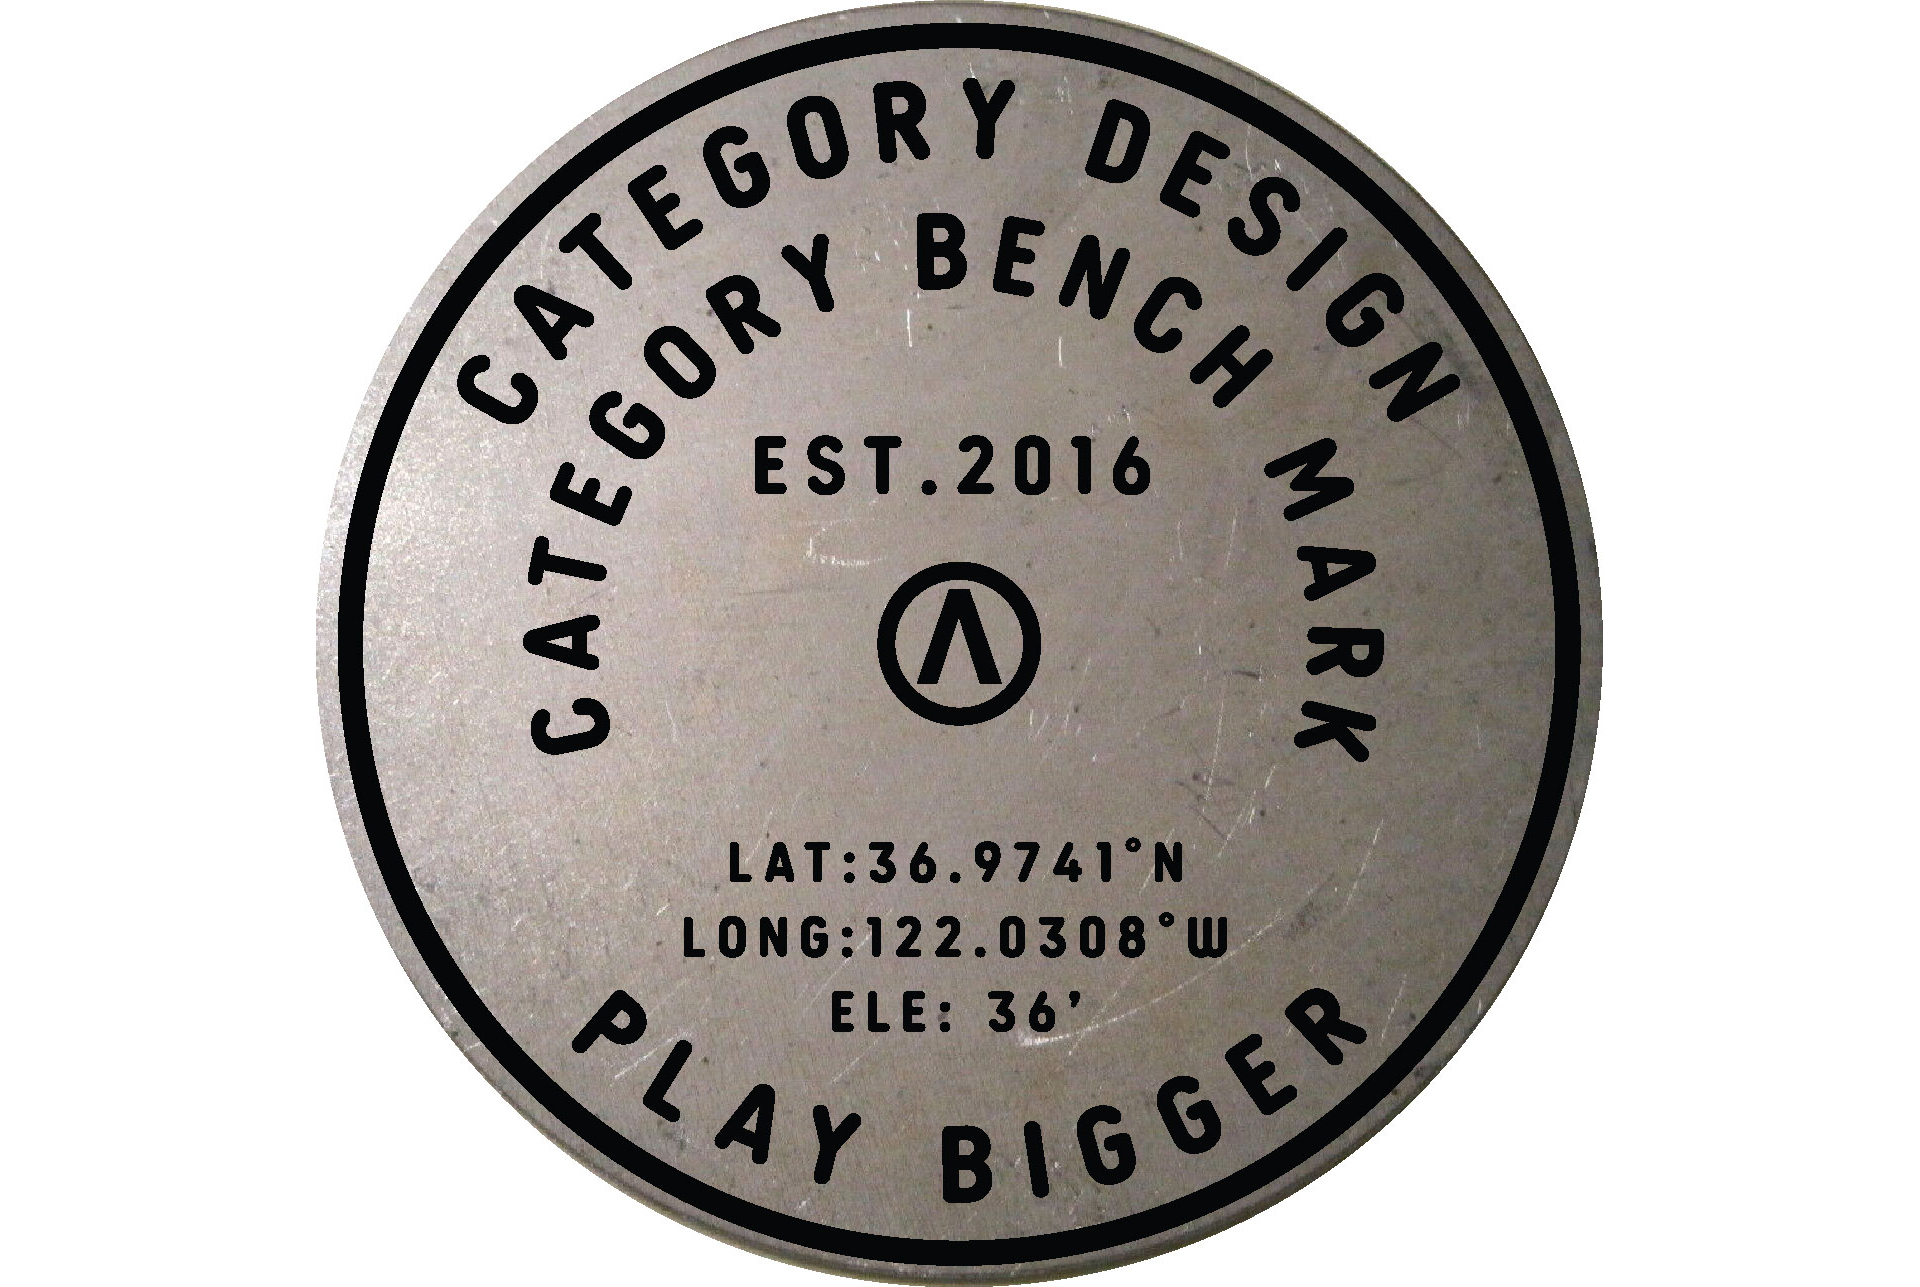 Category Design